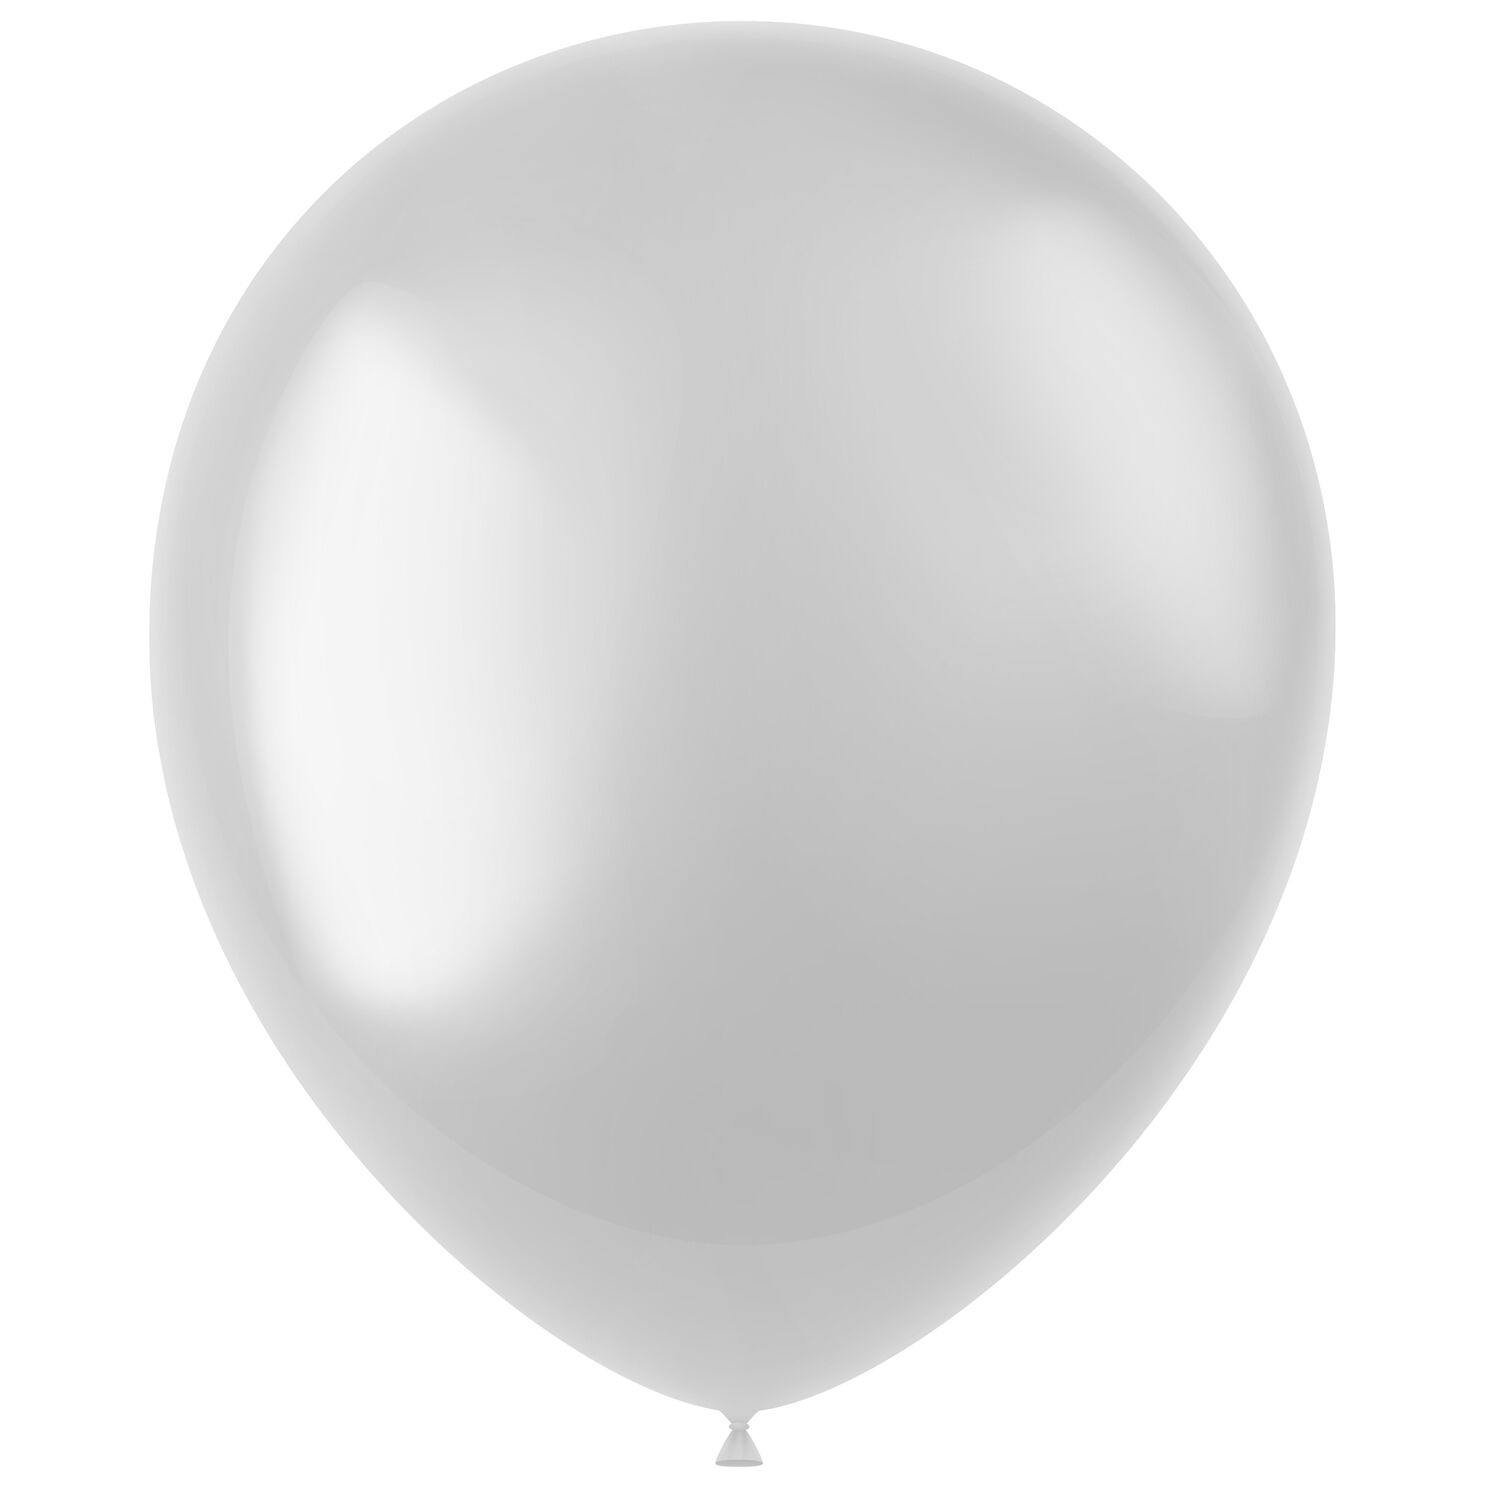 NEU Latex-Luftballons glänzend, 33cm, weiß, 50 Stück, Metallic-Ballons